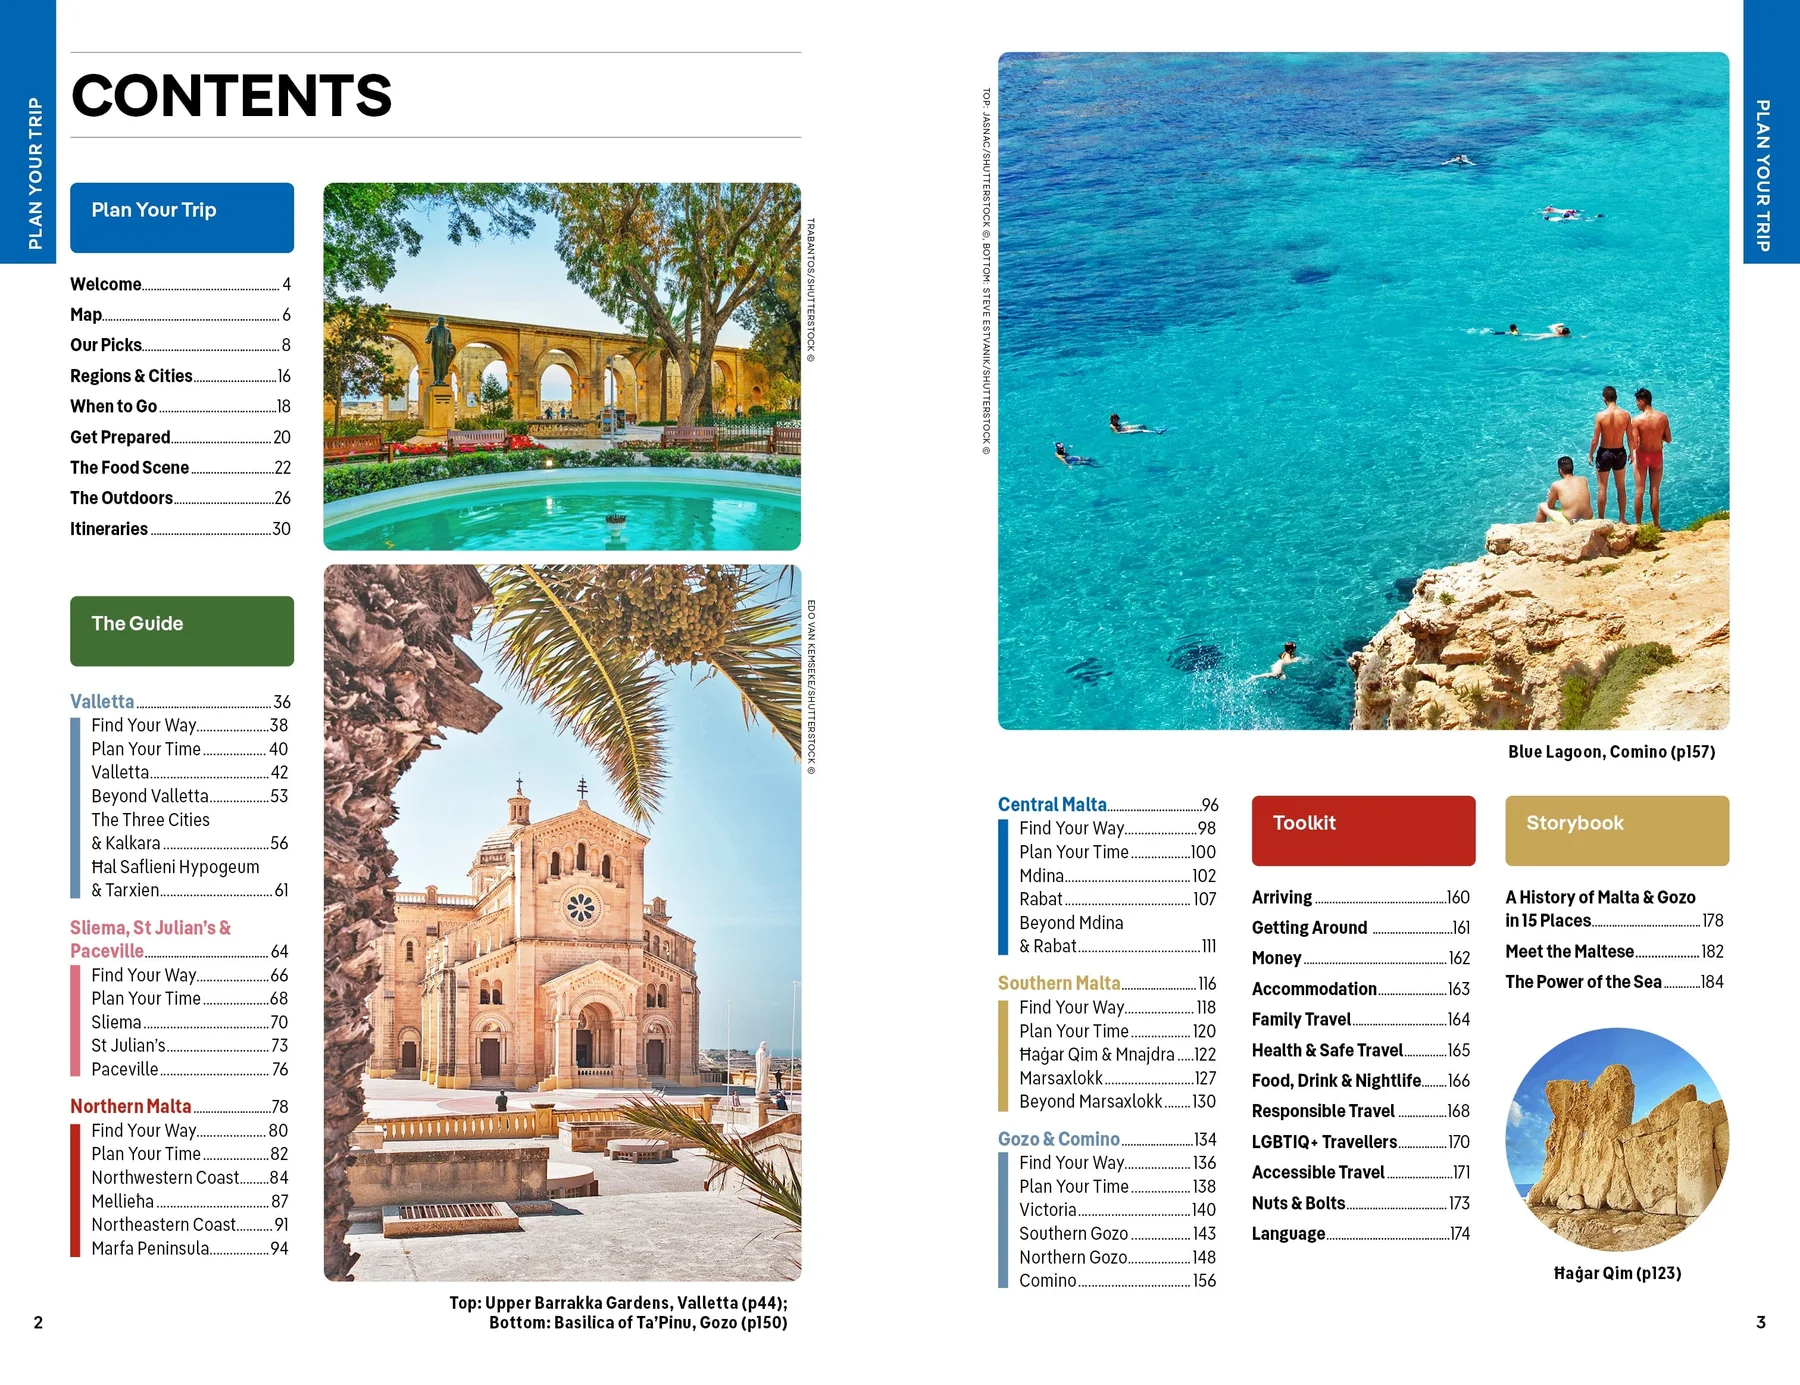 Malta & Gozo Lonely Planet